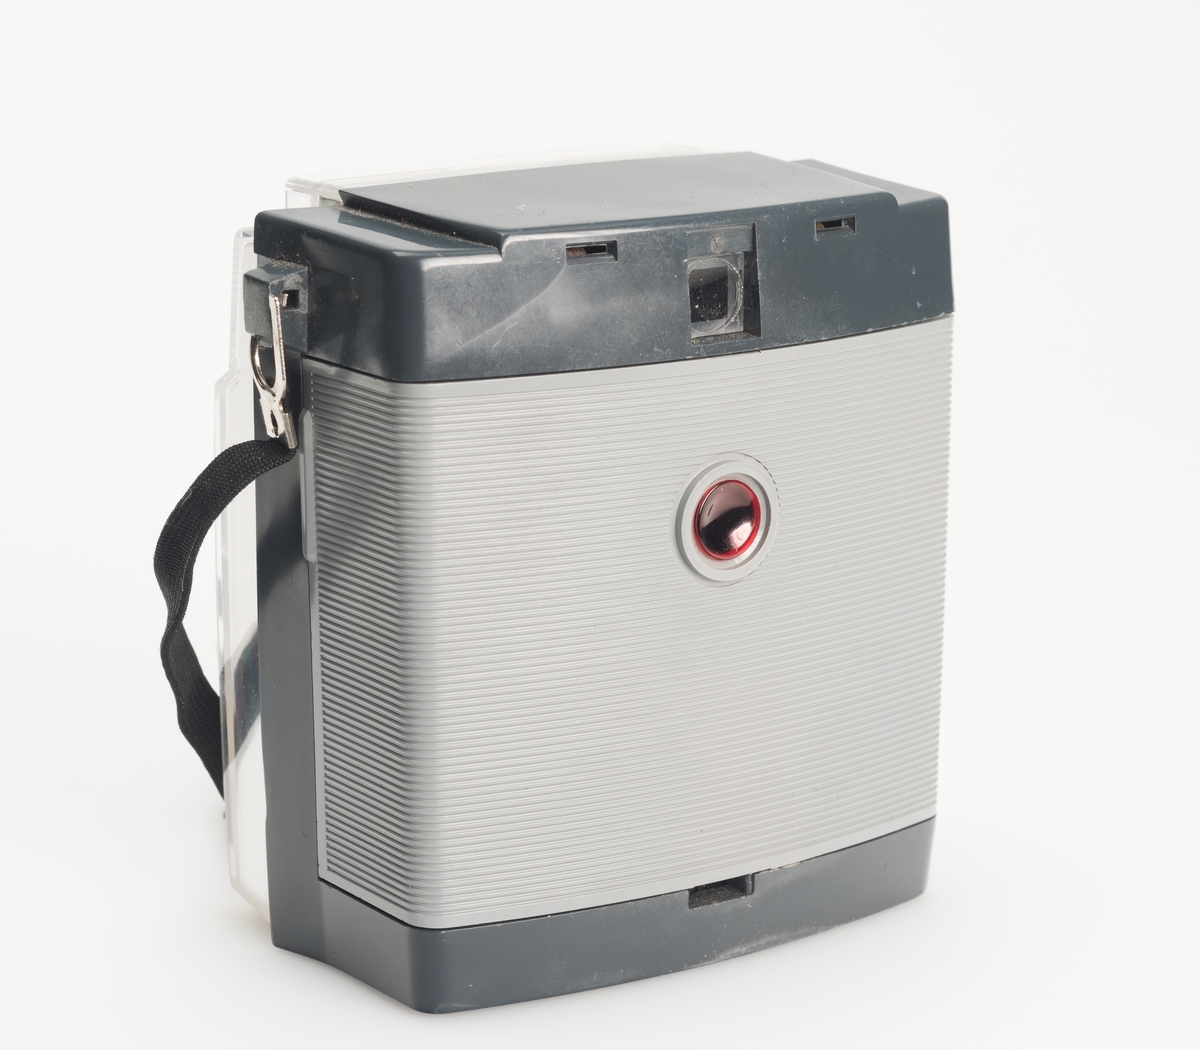 Brownie Fiesta er et enkelt viewfinderkamera med kontaktpunkt for avtagbar blits, produsert av Kodak fra 1962 til 1966.
Filmtype: 127
Bildestørrelse: 1 5/8 x 1 5/8"
Linse: F/11
Lukker: 1/40s